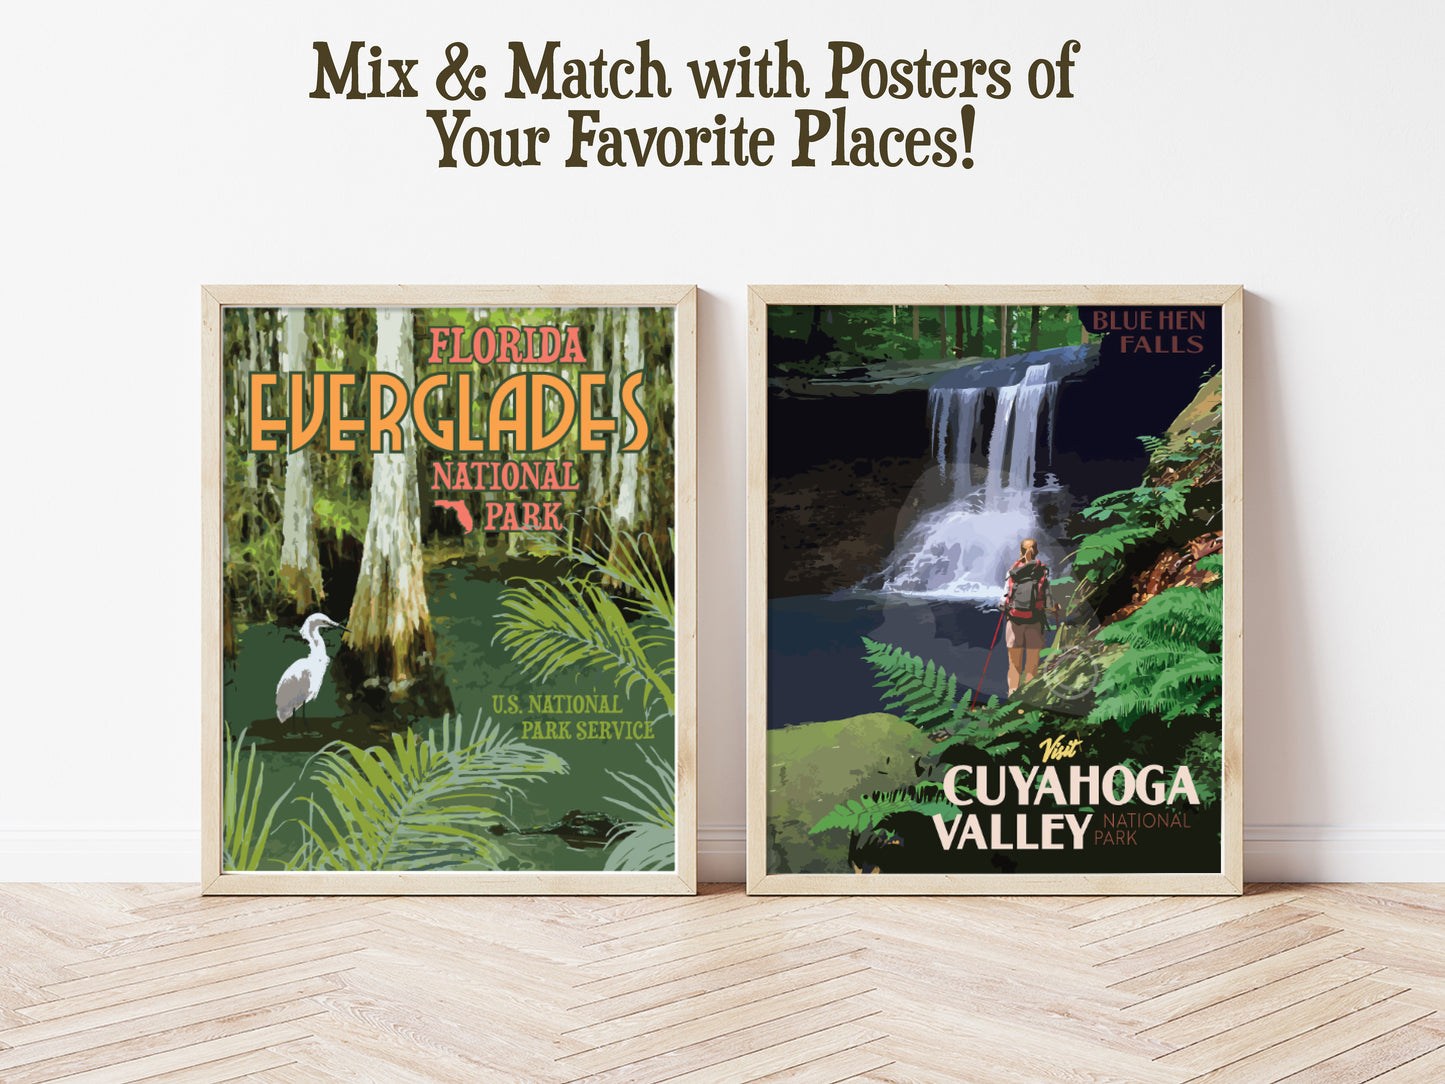 Cuyahoga Valley National Park Print, Cuyahoga National Park Poster, Blue Hen Falls Travel Poster